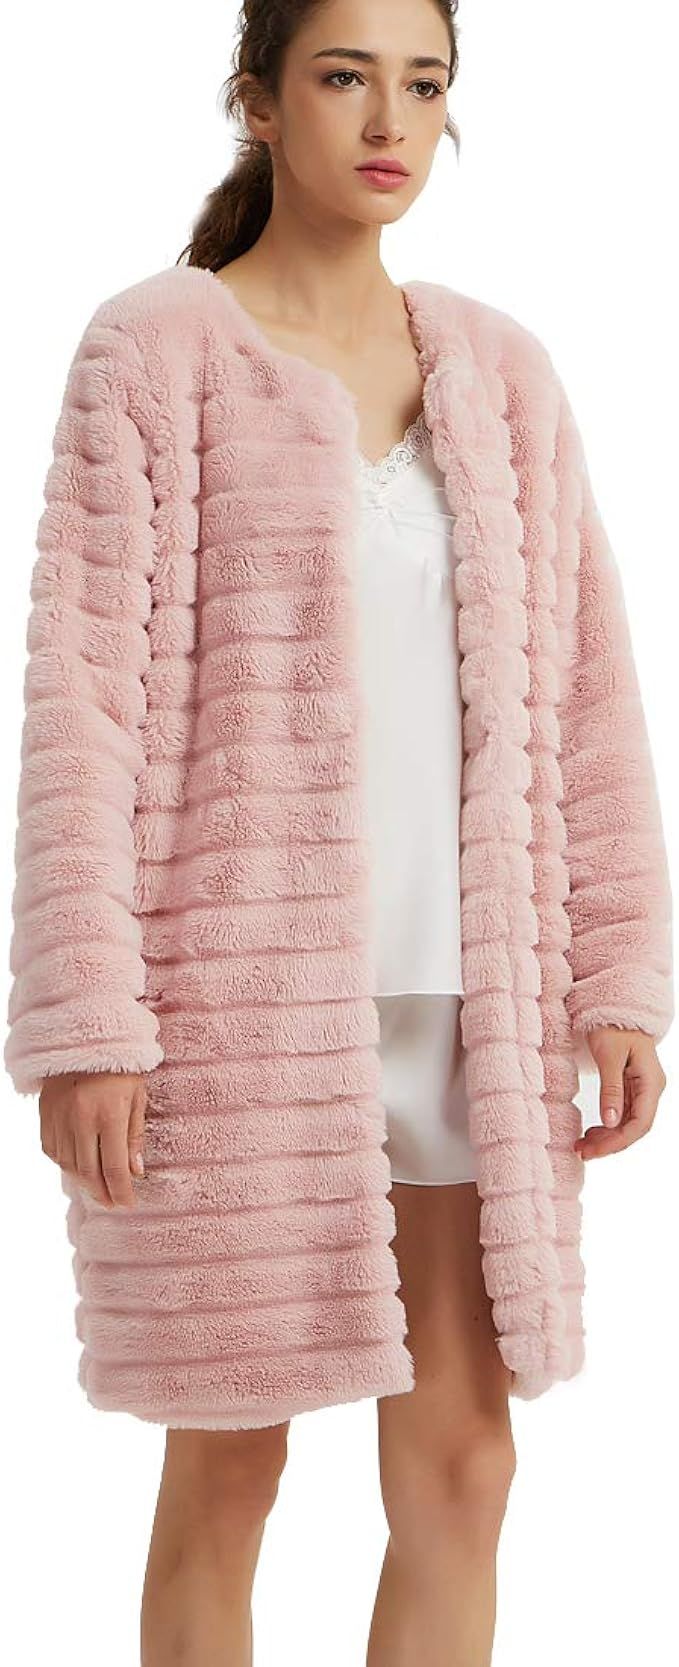 New Dance Women's Short Faux Fur Coat Long Sleeve Luxury Pink Winter Parka Outwear | Amazon (US)